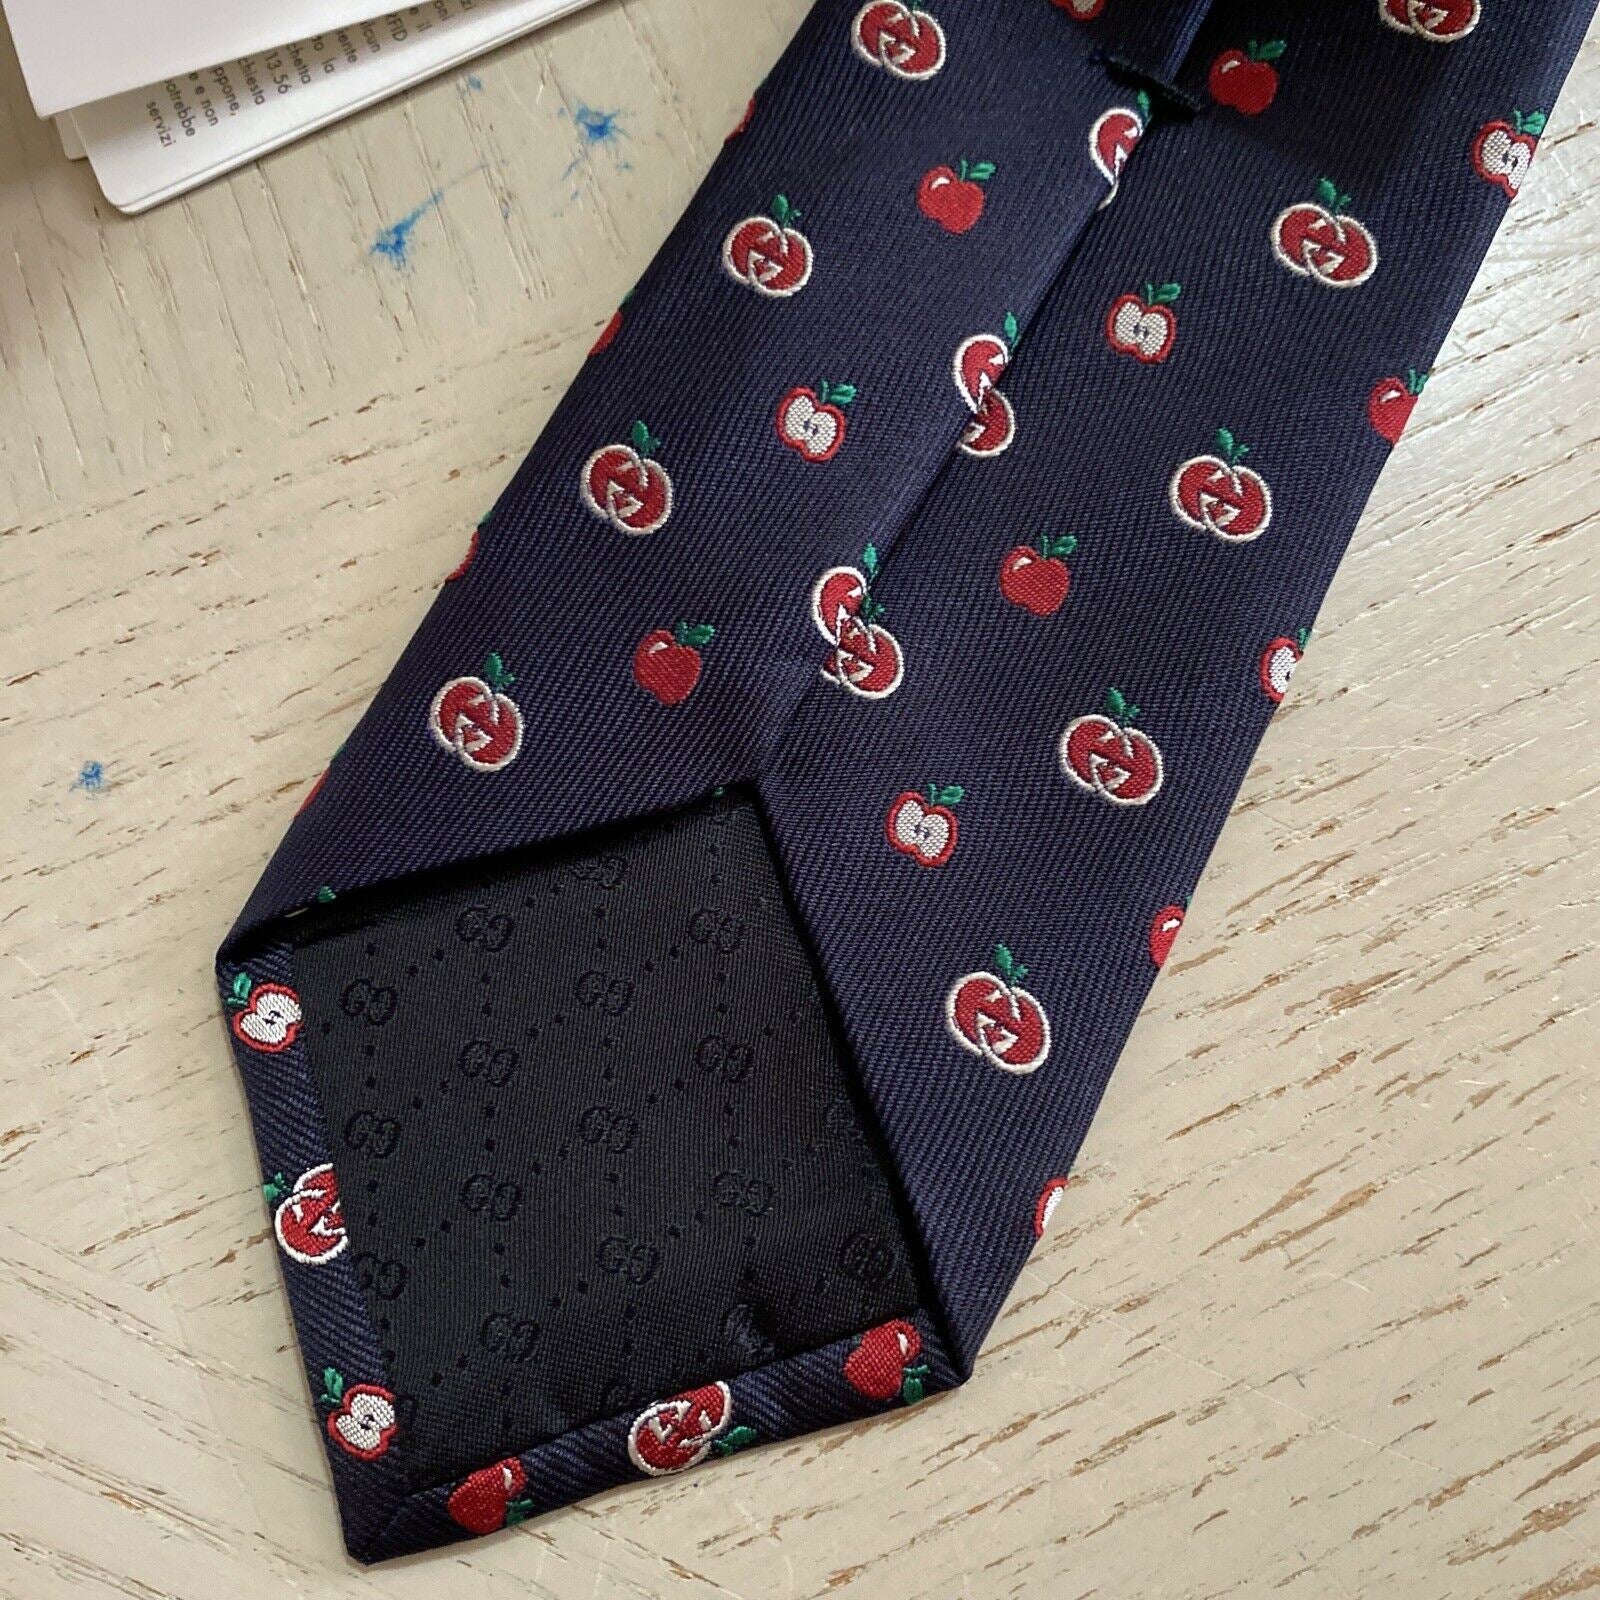 Neue Gucci Herren-Krawatte mit GG-Monogramm, dunkelblau/rot, hergestellt in Italien